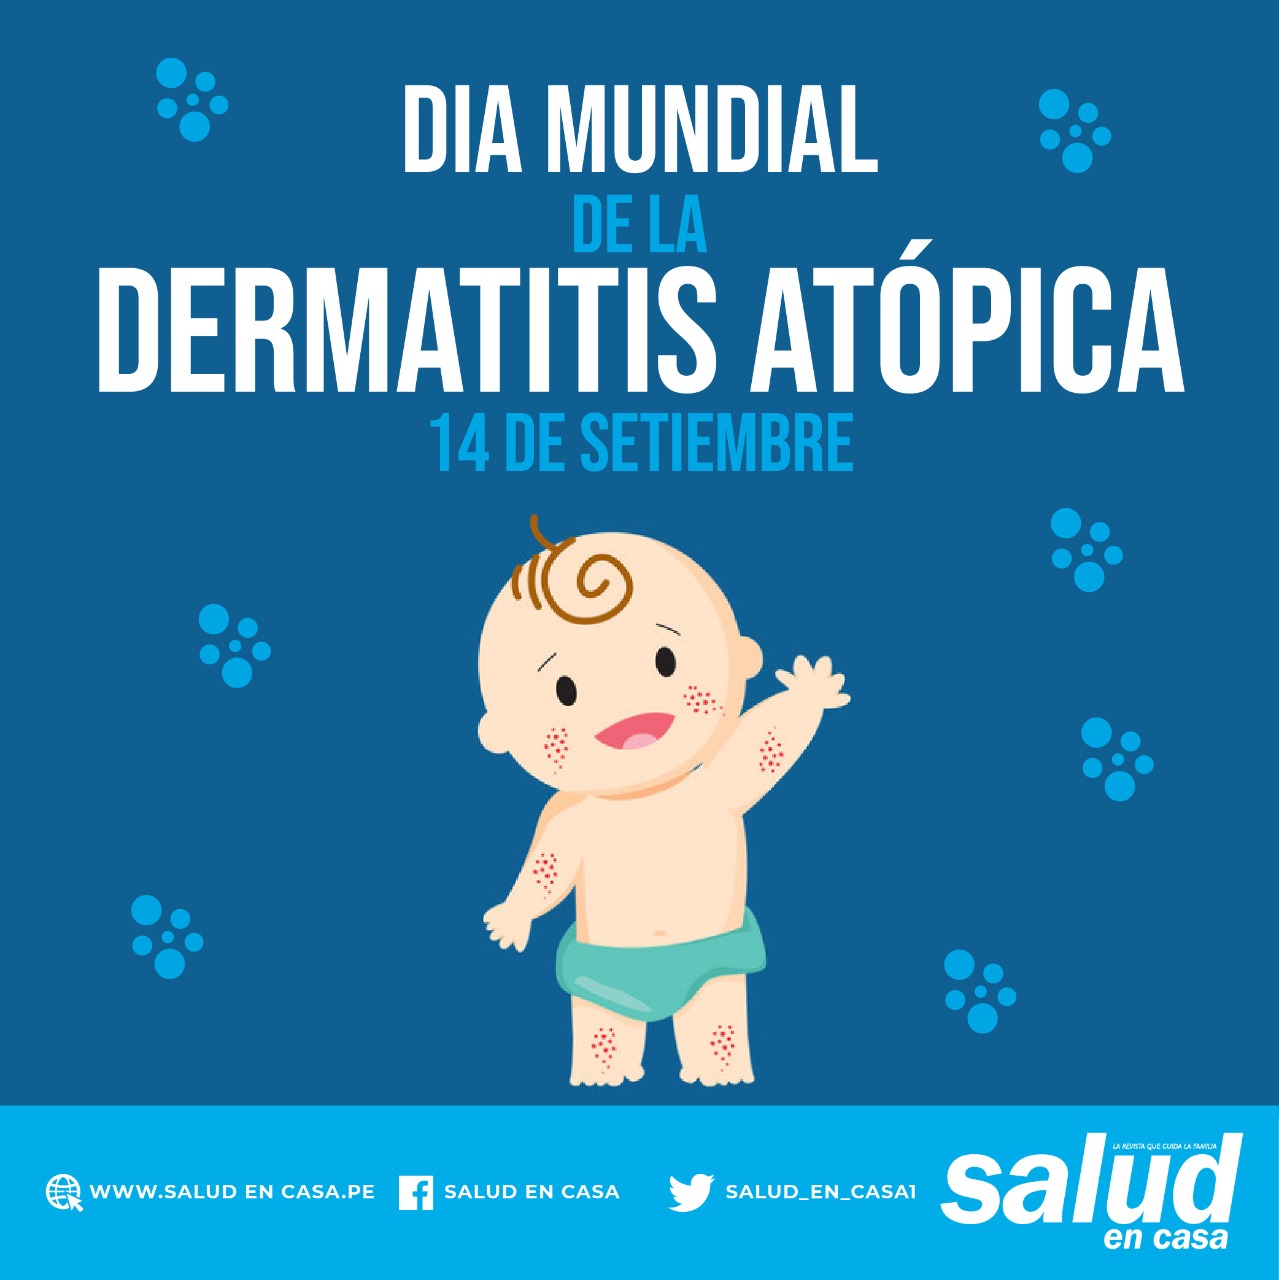 El 5% de casos de dermatitis atópica es en niños lactantes